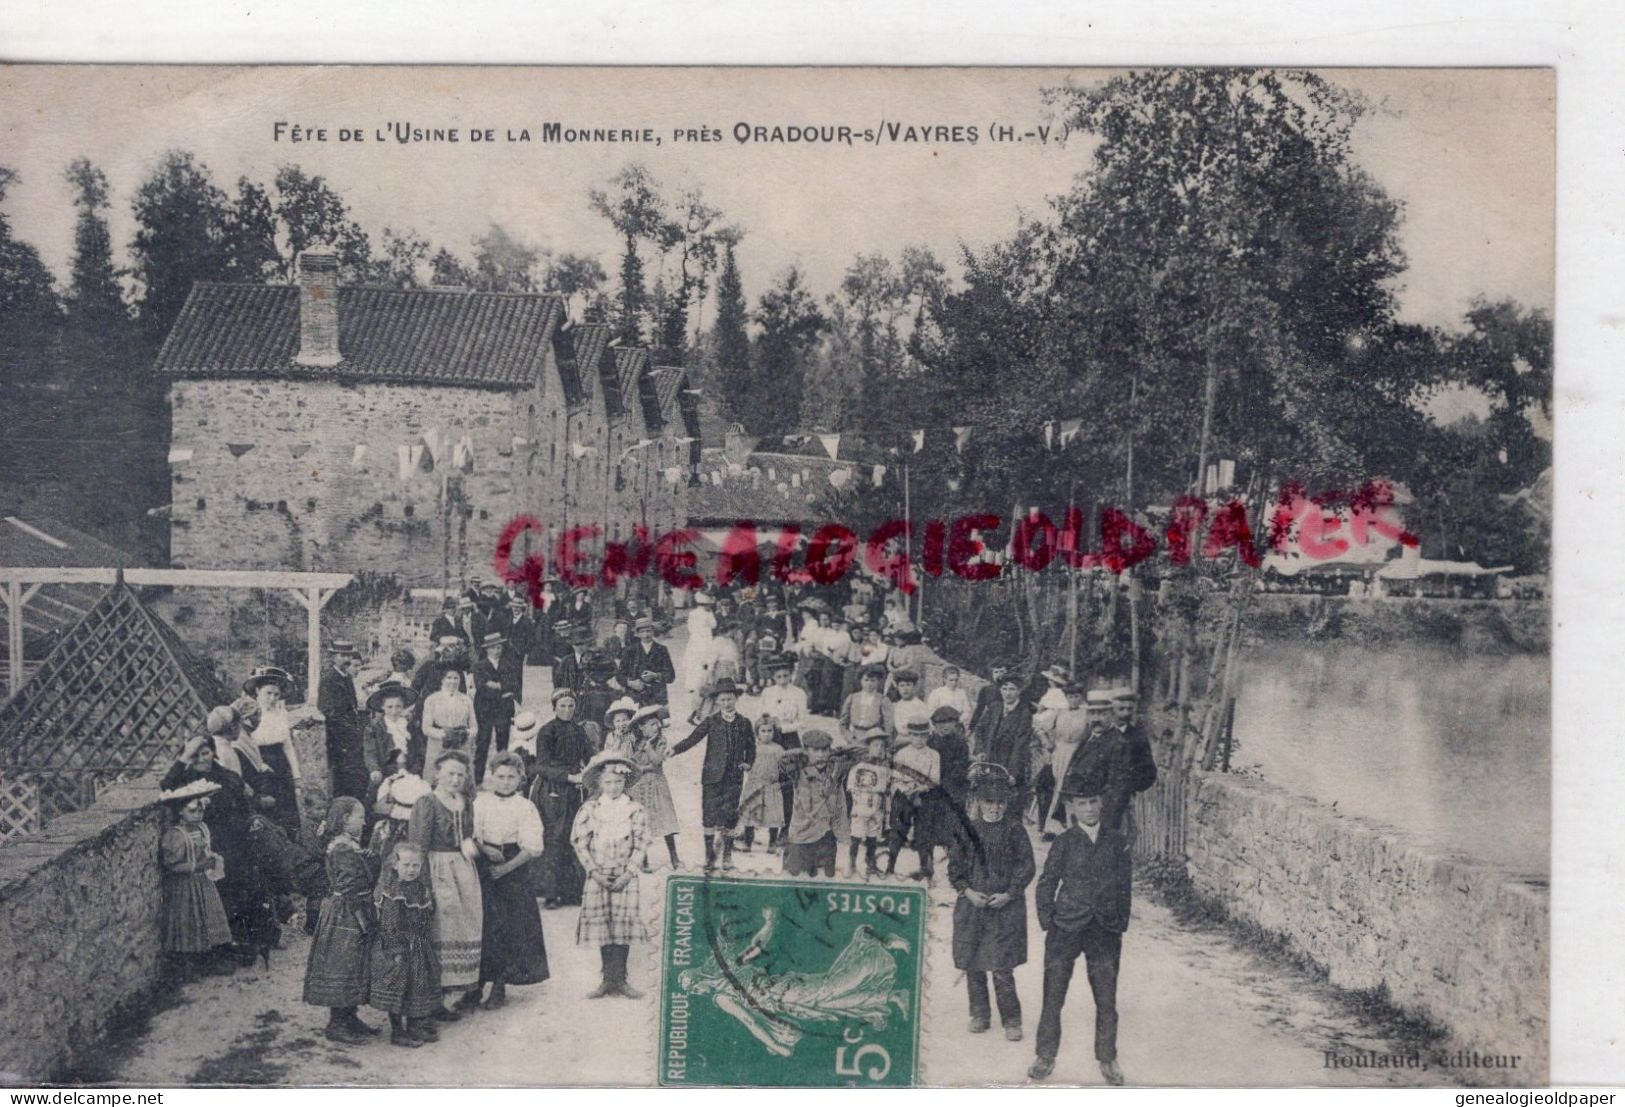 06- ORADOUR SUR VAYRES - FETE DE L' USINE DE LA MONNERIE - 1911  EDITEUR ROULAUD  RARE - Oradour Sur Vayres